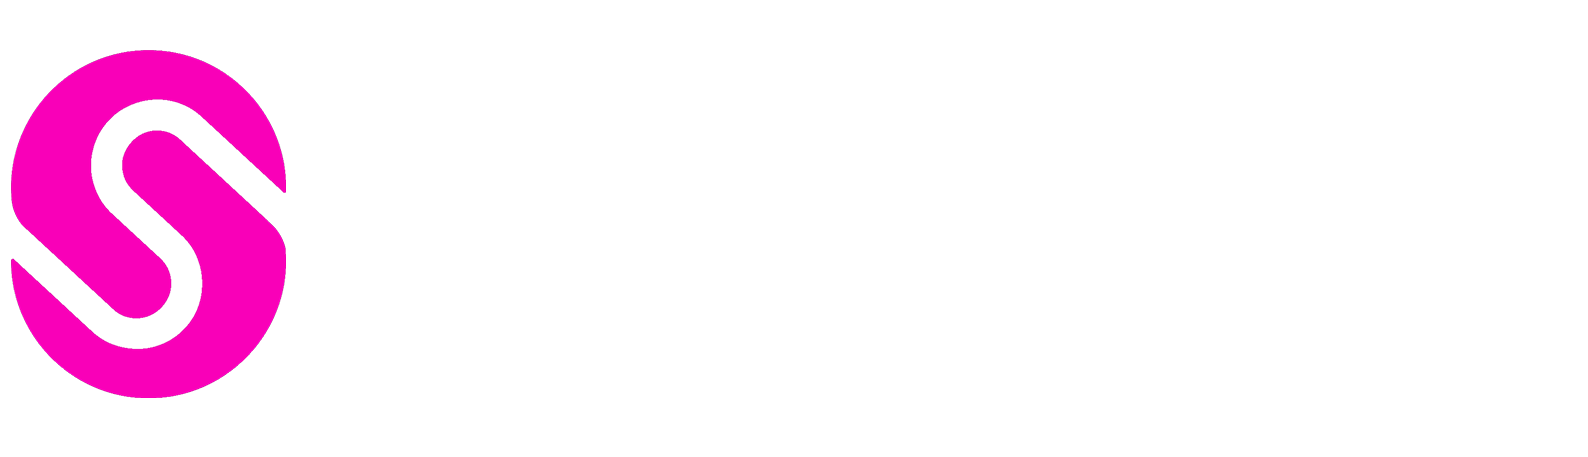 Stikeys Shop Logo